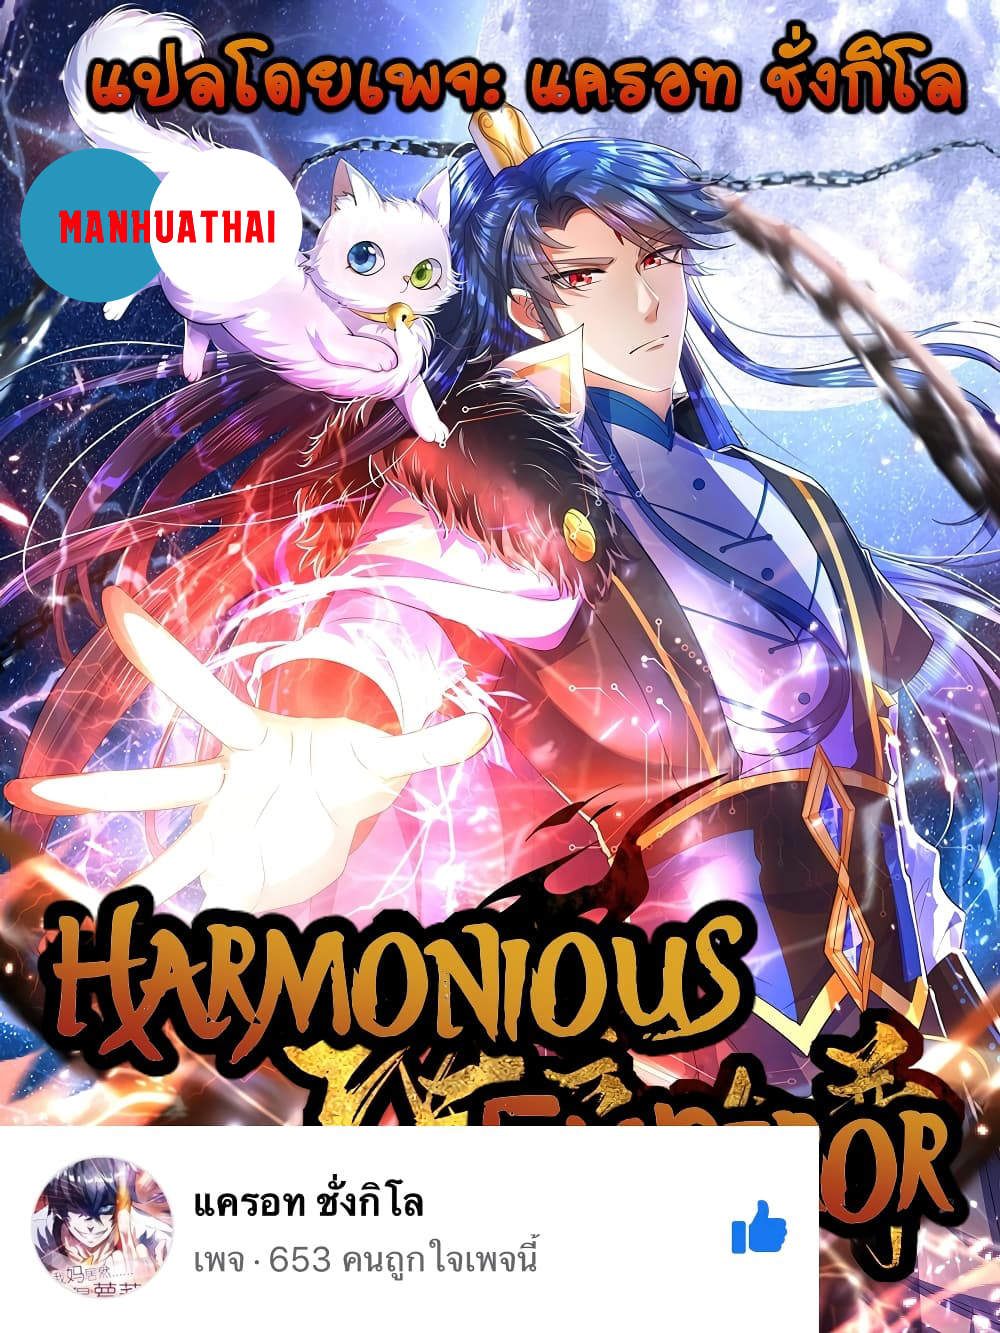 Harmonious Emperor is respected 84-84